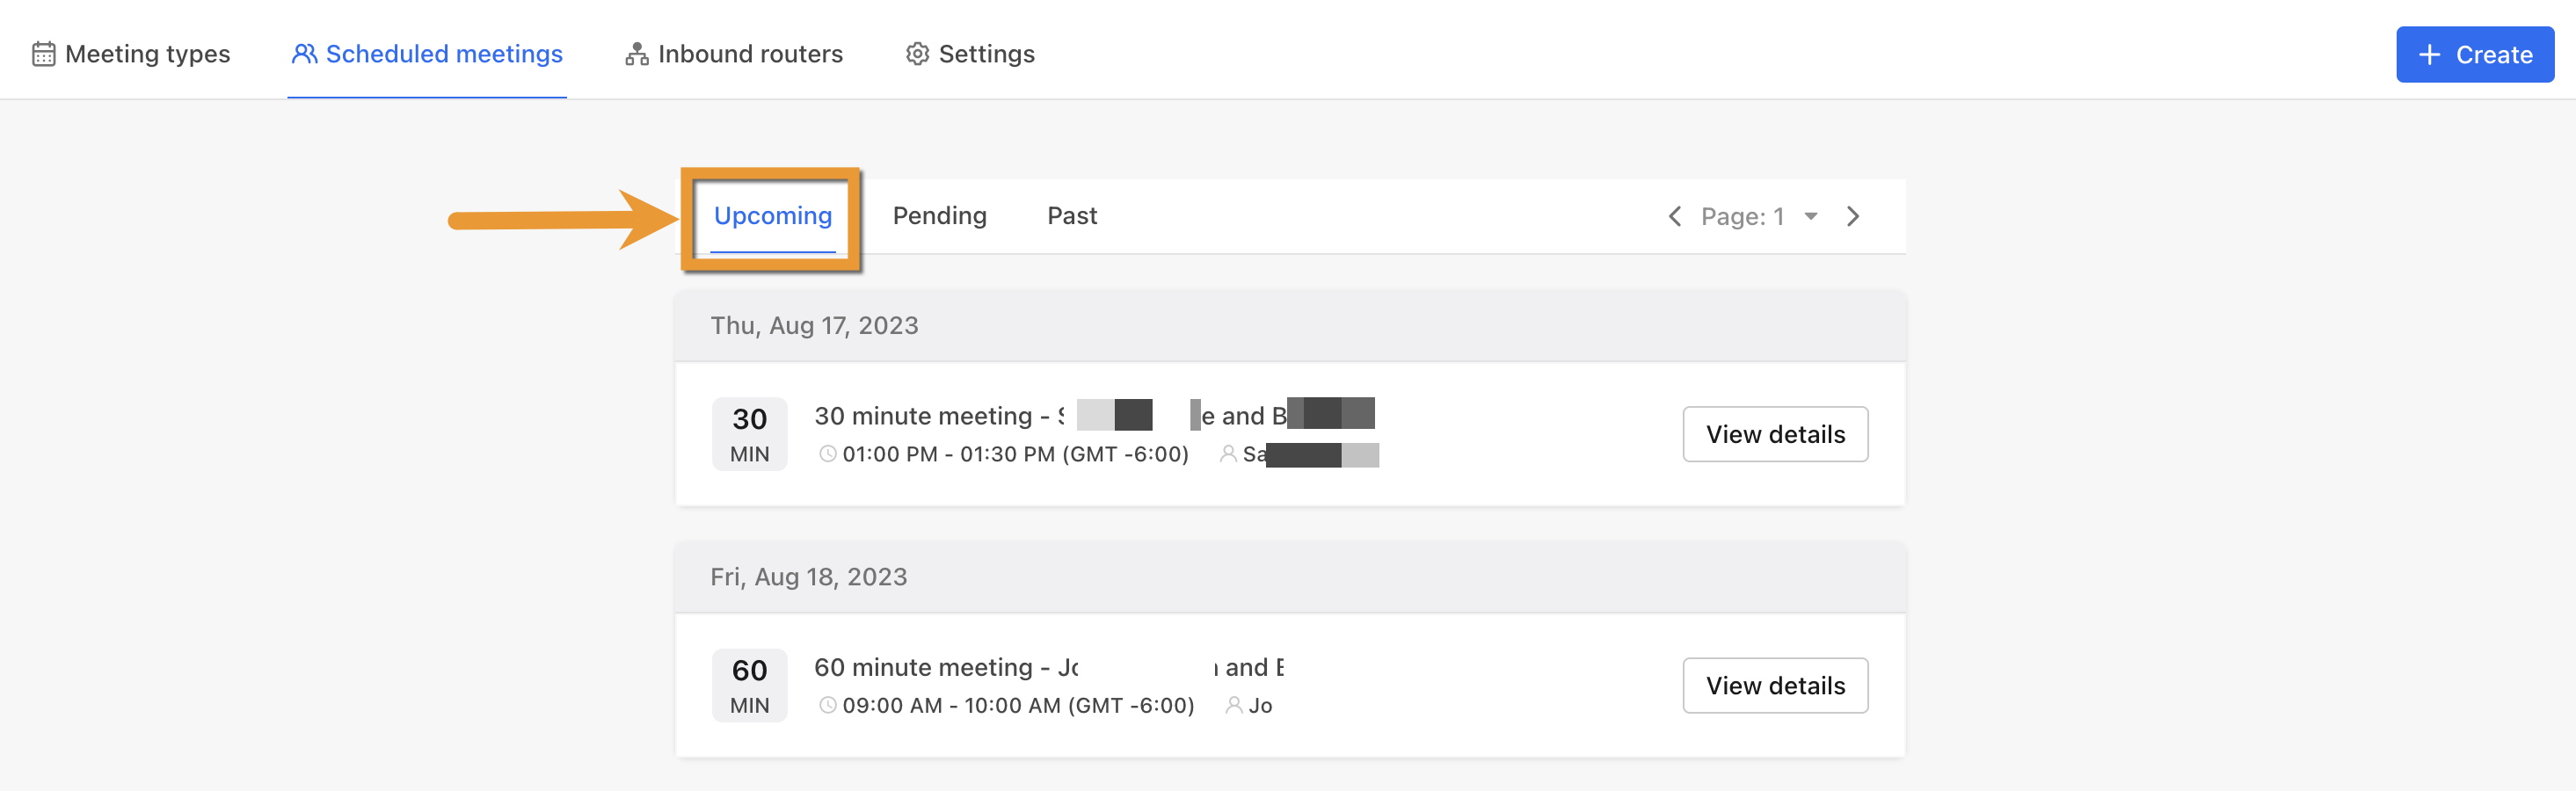 Upcoming Meetings Tab in Meetings Dashboard